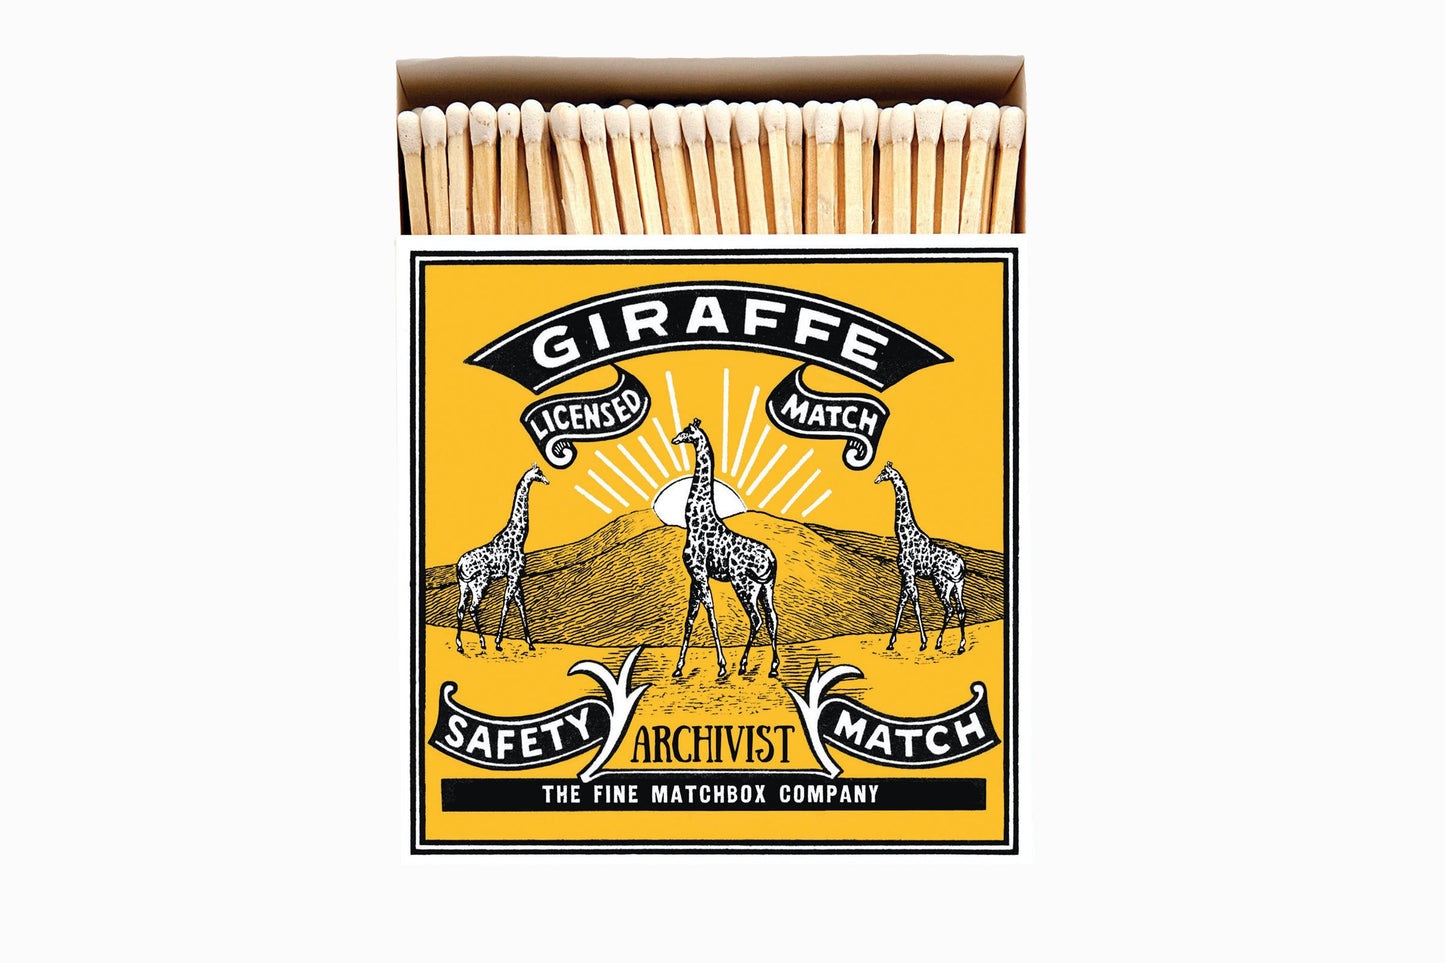 Giraffe Matches